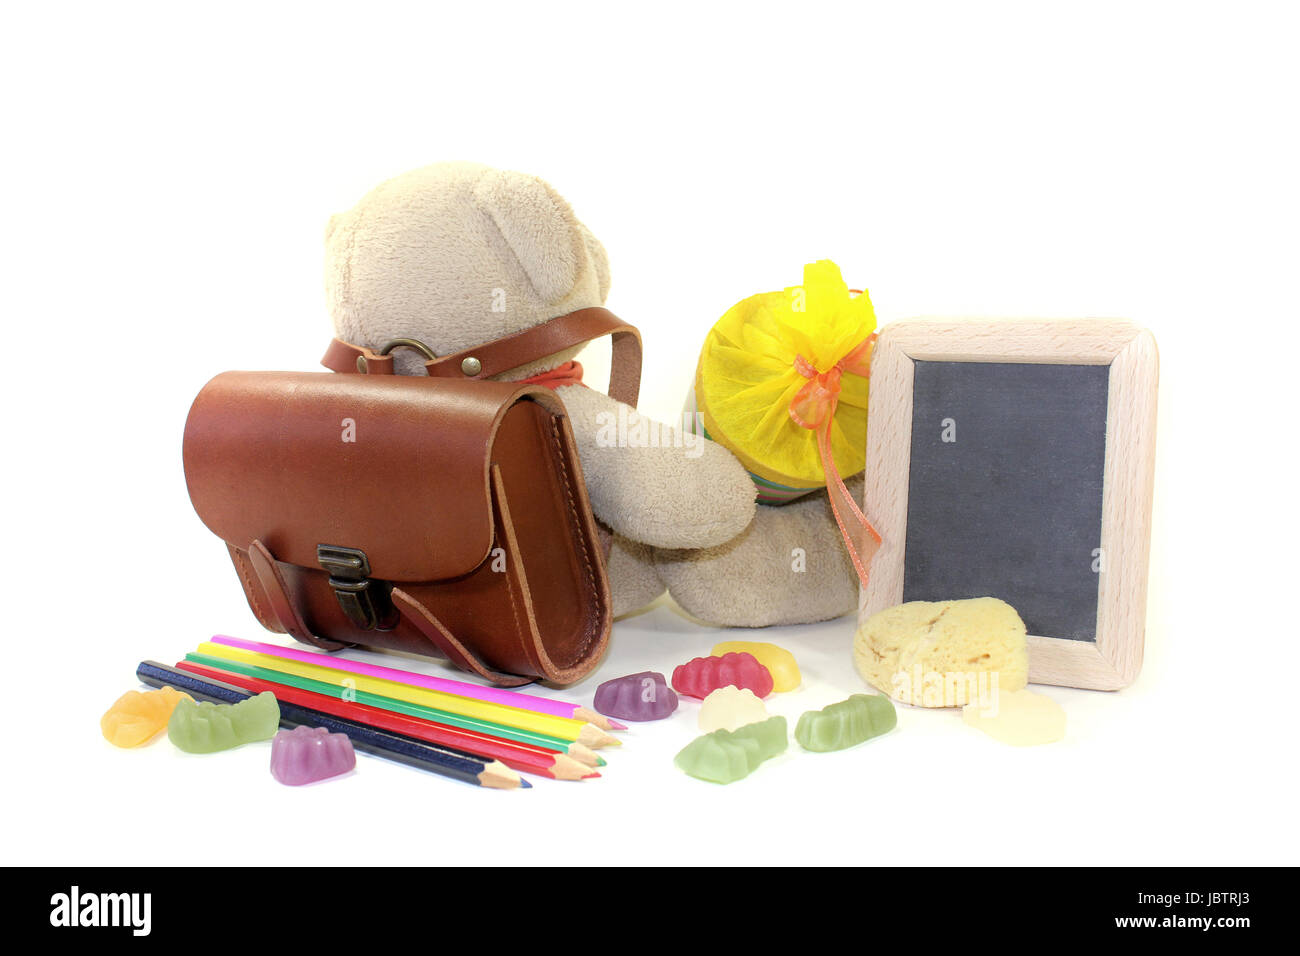 Teddybär mit Schultüte, Mappe, Stiften und Tafel vor hellem Hintergrund  Stock Photo - Alamy